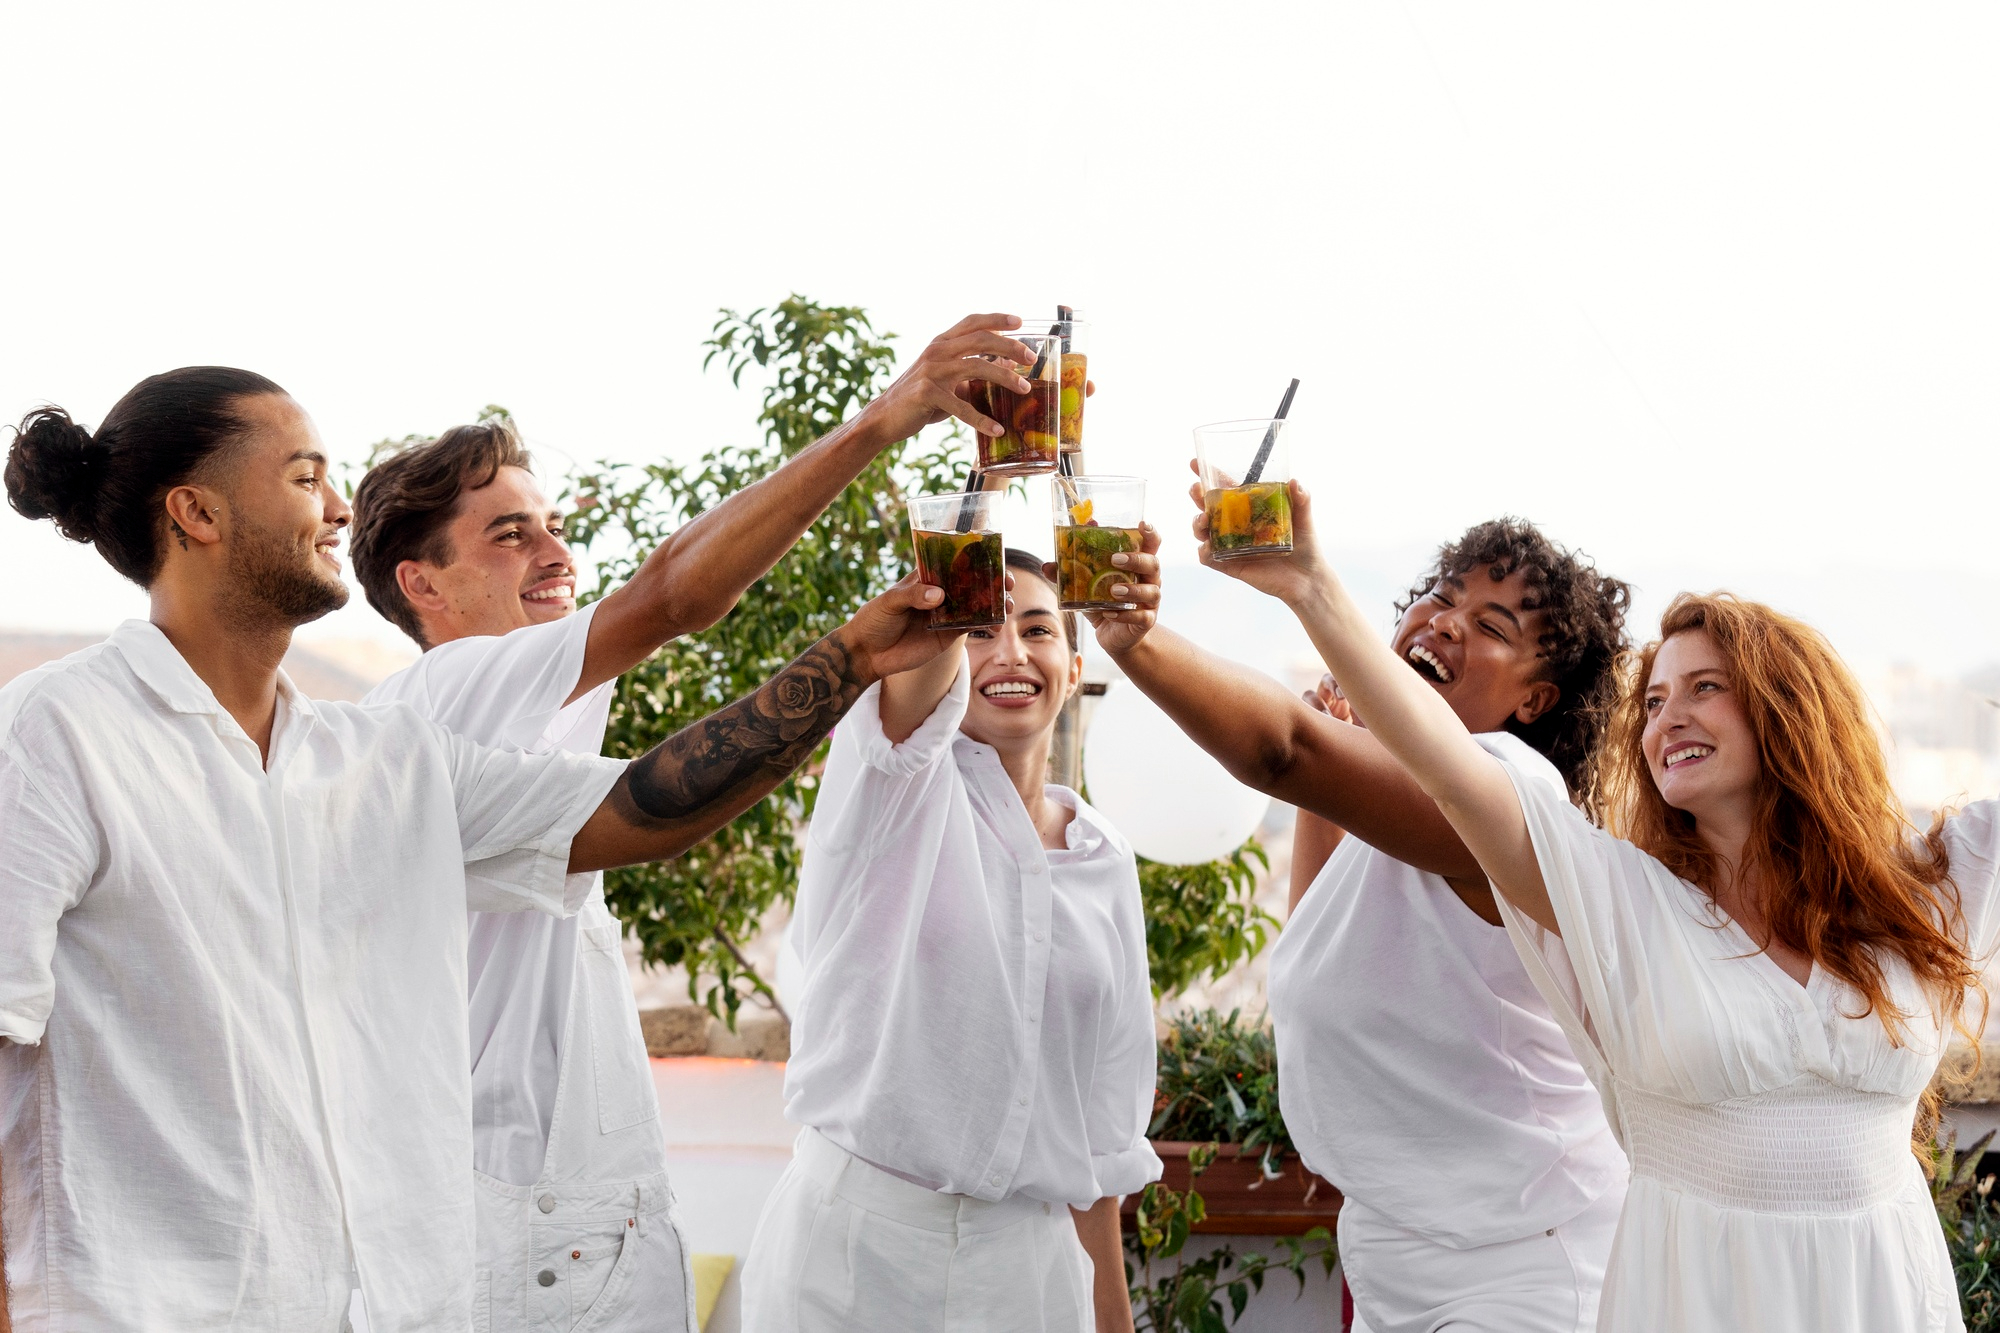 Gente vestida de blanco brindando en una fiesta | Fuente: Freepik